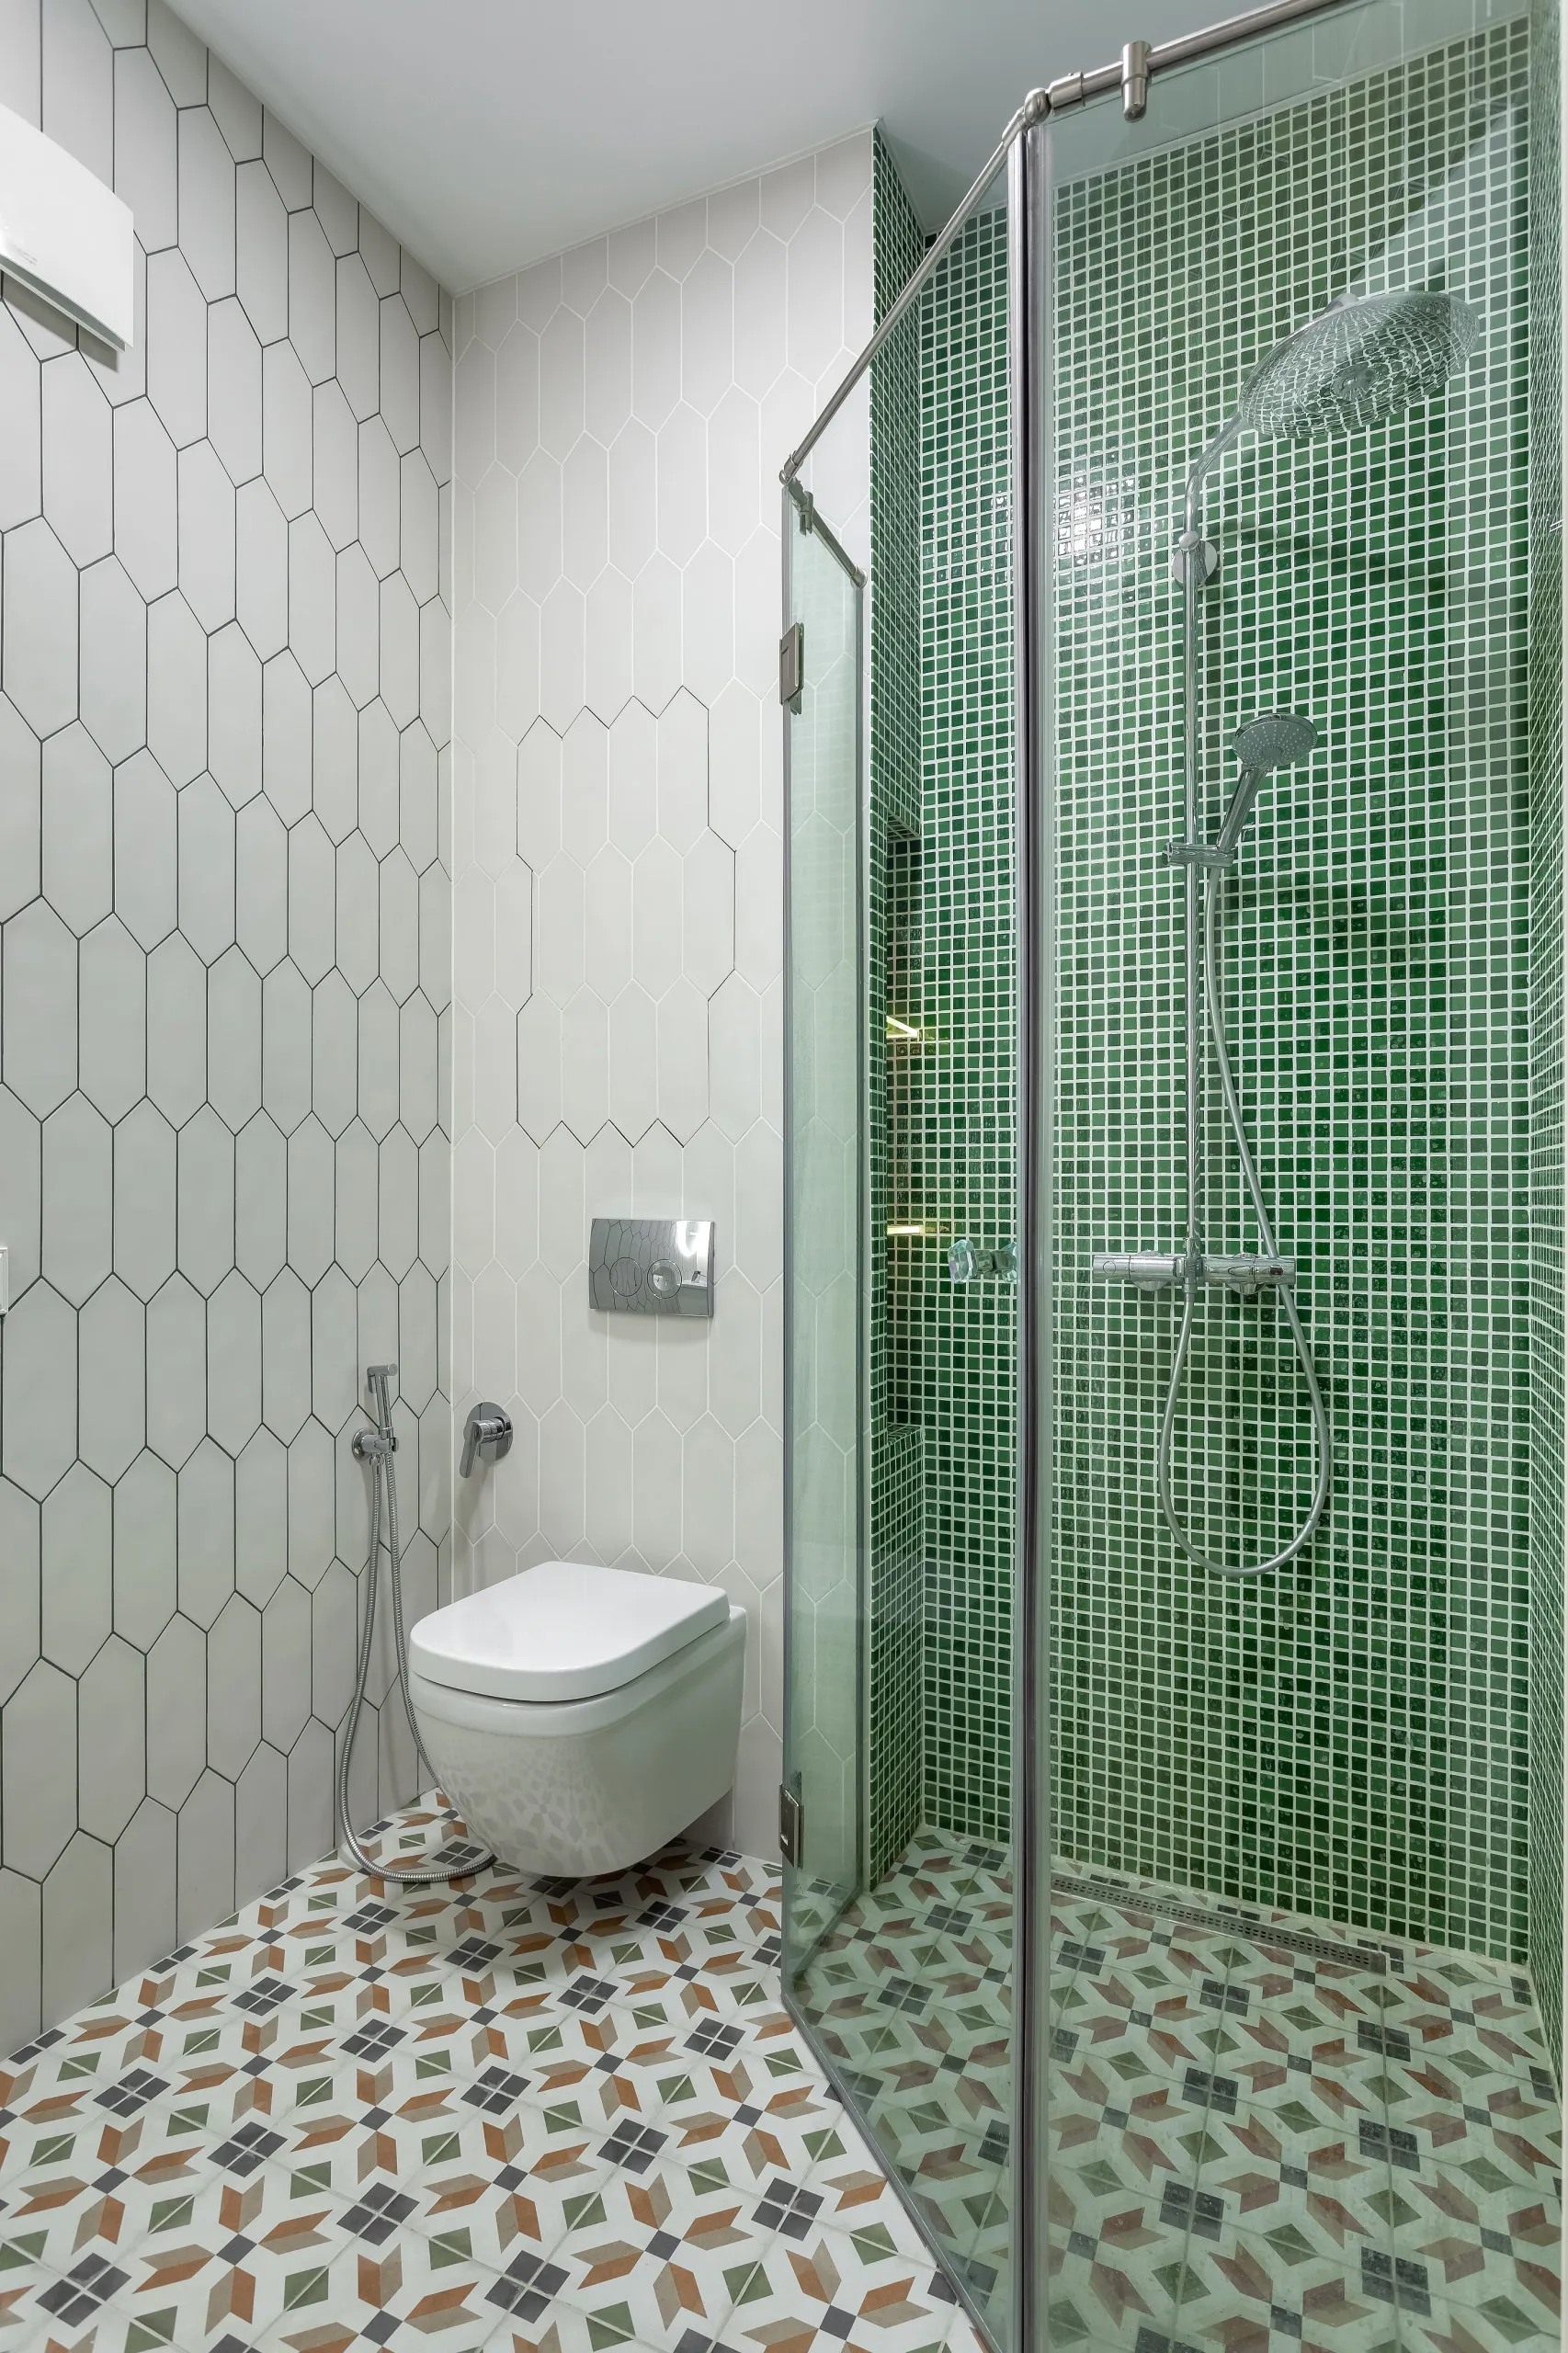 Круглая мозаика – отличное дизайнерское решение для украшения дома или квартиры!